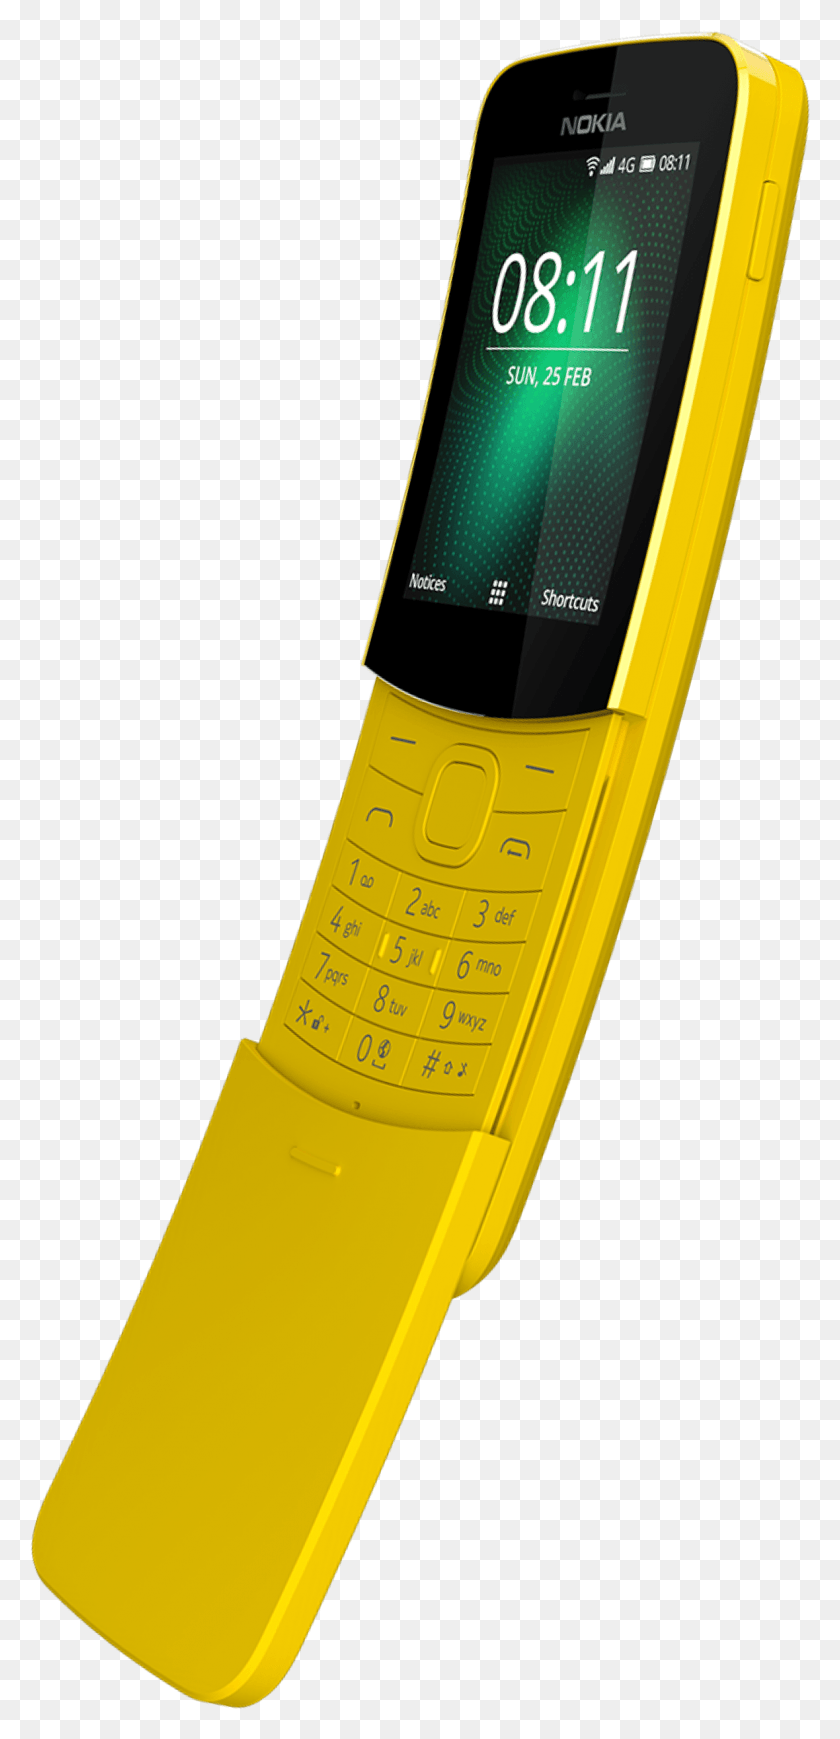 1180x2541 Descargar Png Otros Teléfonos Nokia Que Queremos Reiniciar Nokia She Phone, Electronics, Mobile Phone, Cell Phone Hd Png